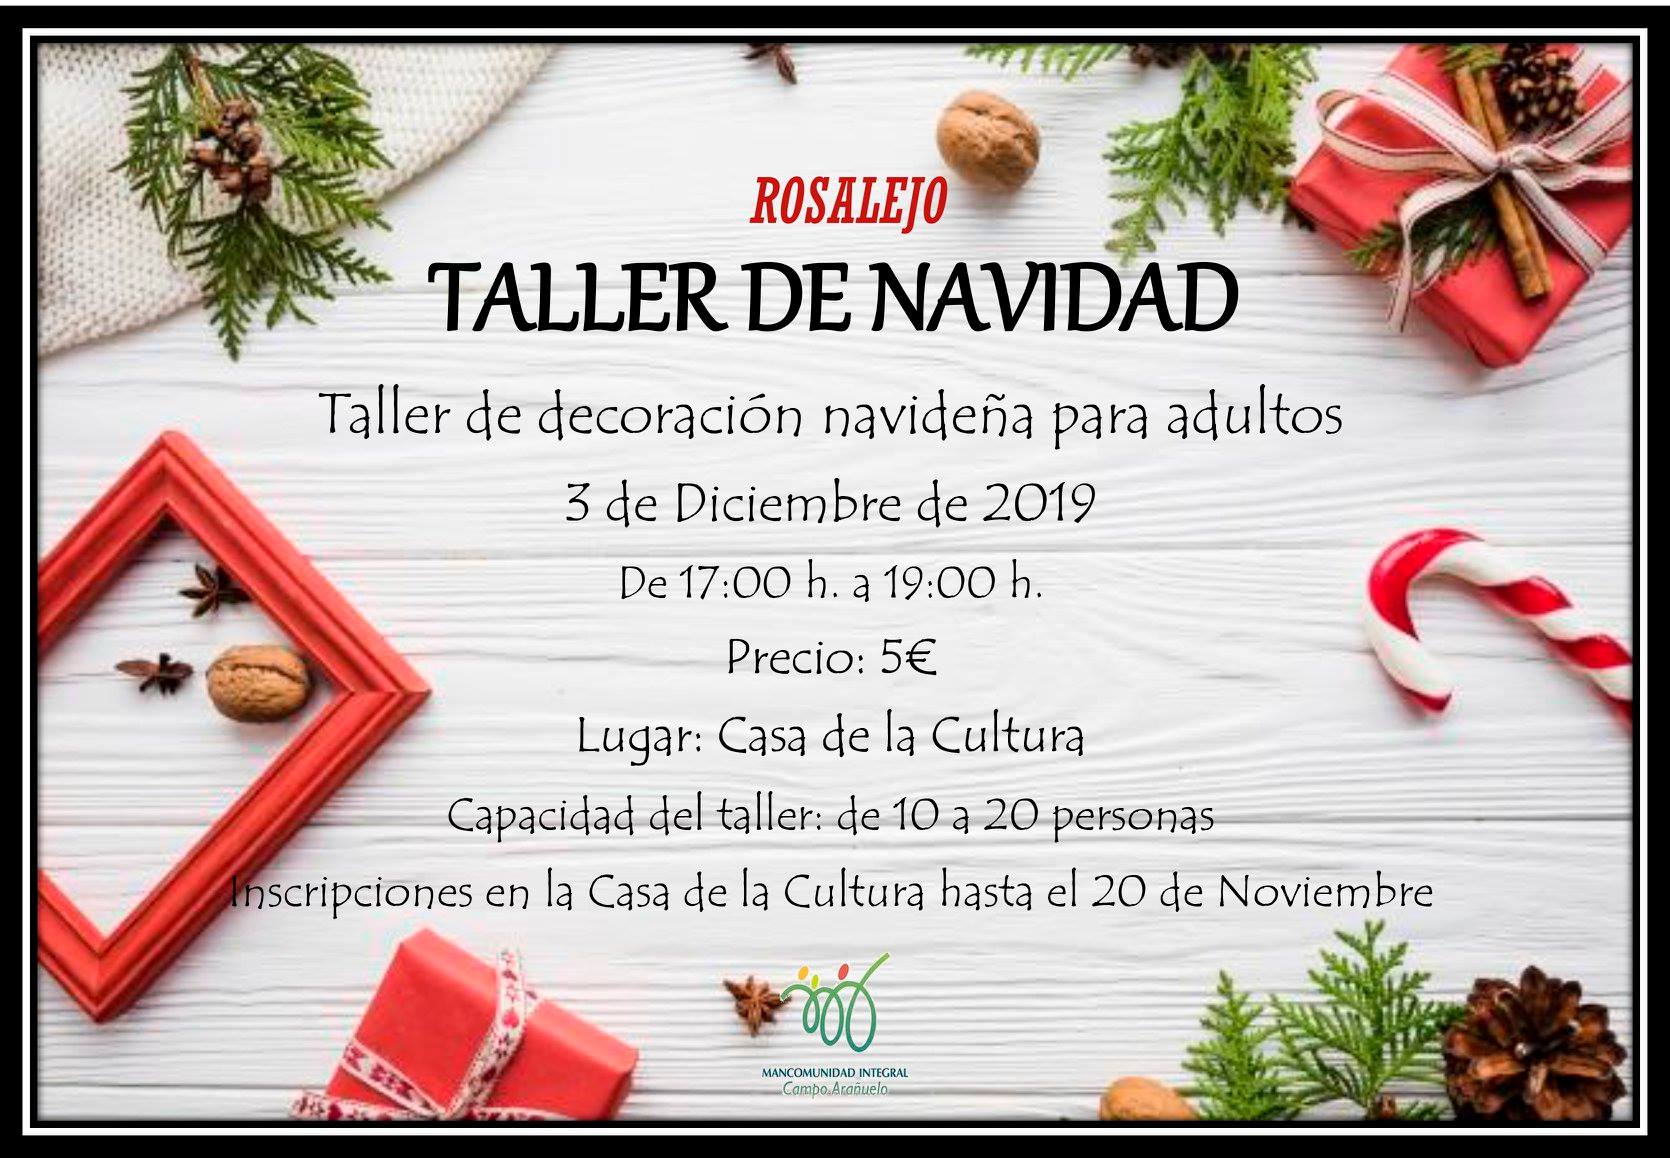 Taller de decoración navideña para adultos 2019 - Rosalejo (Cáceres)